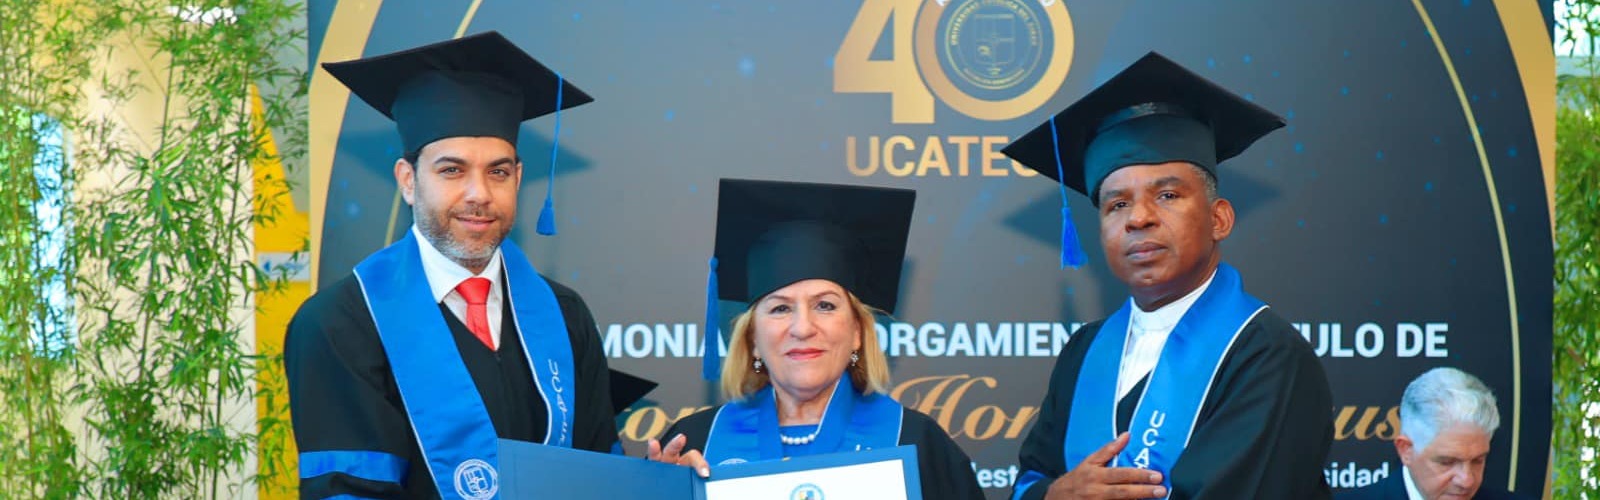 La catedrática de la UMU Pilar Arnaiz es investida doctora honoris causa por la Universidad Católica del Cibao, en República Dominicana